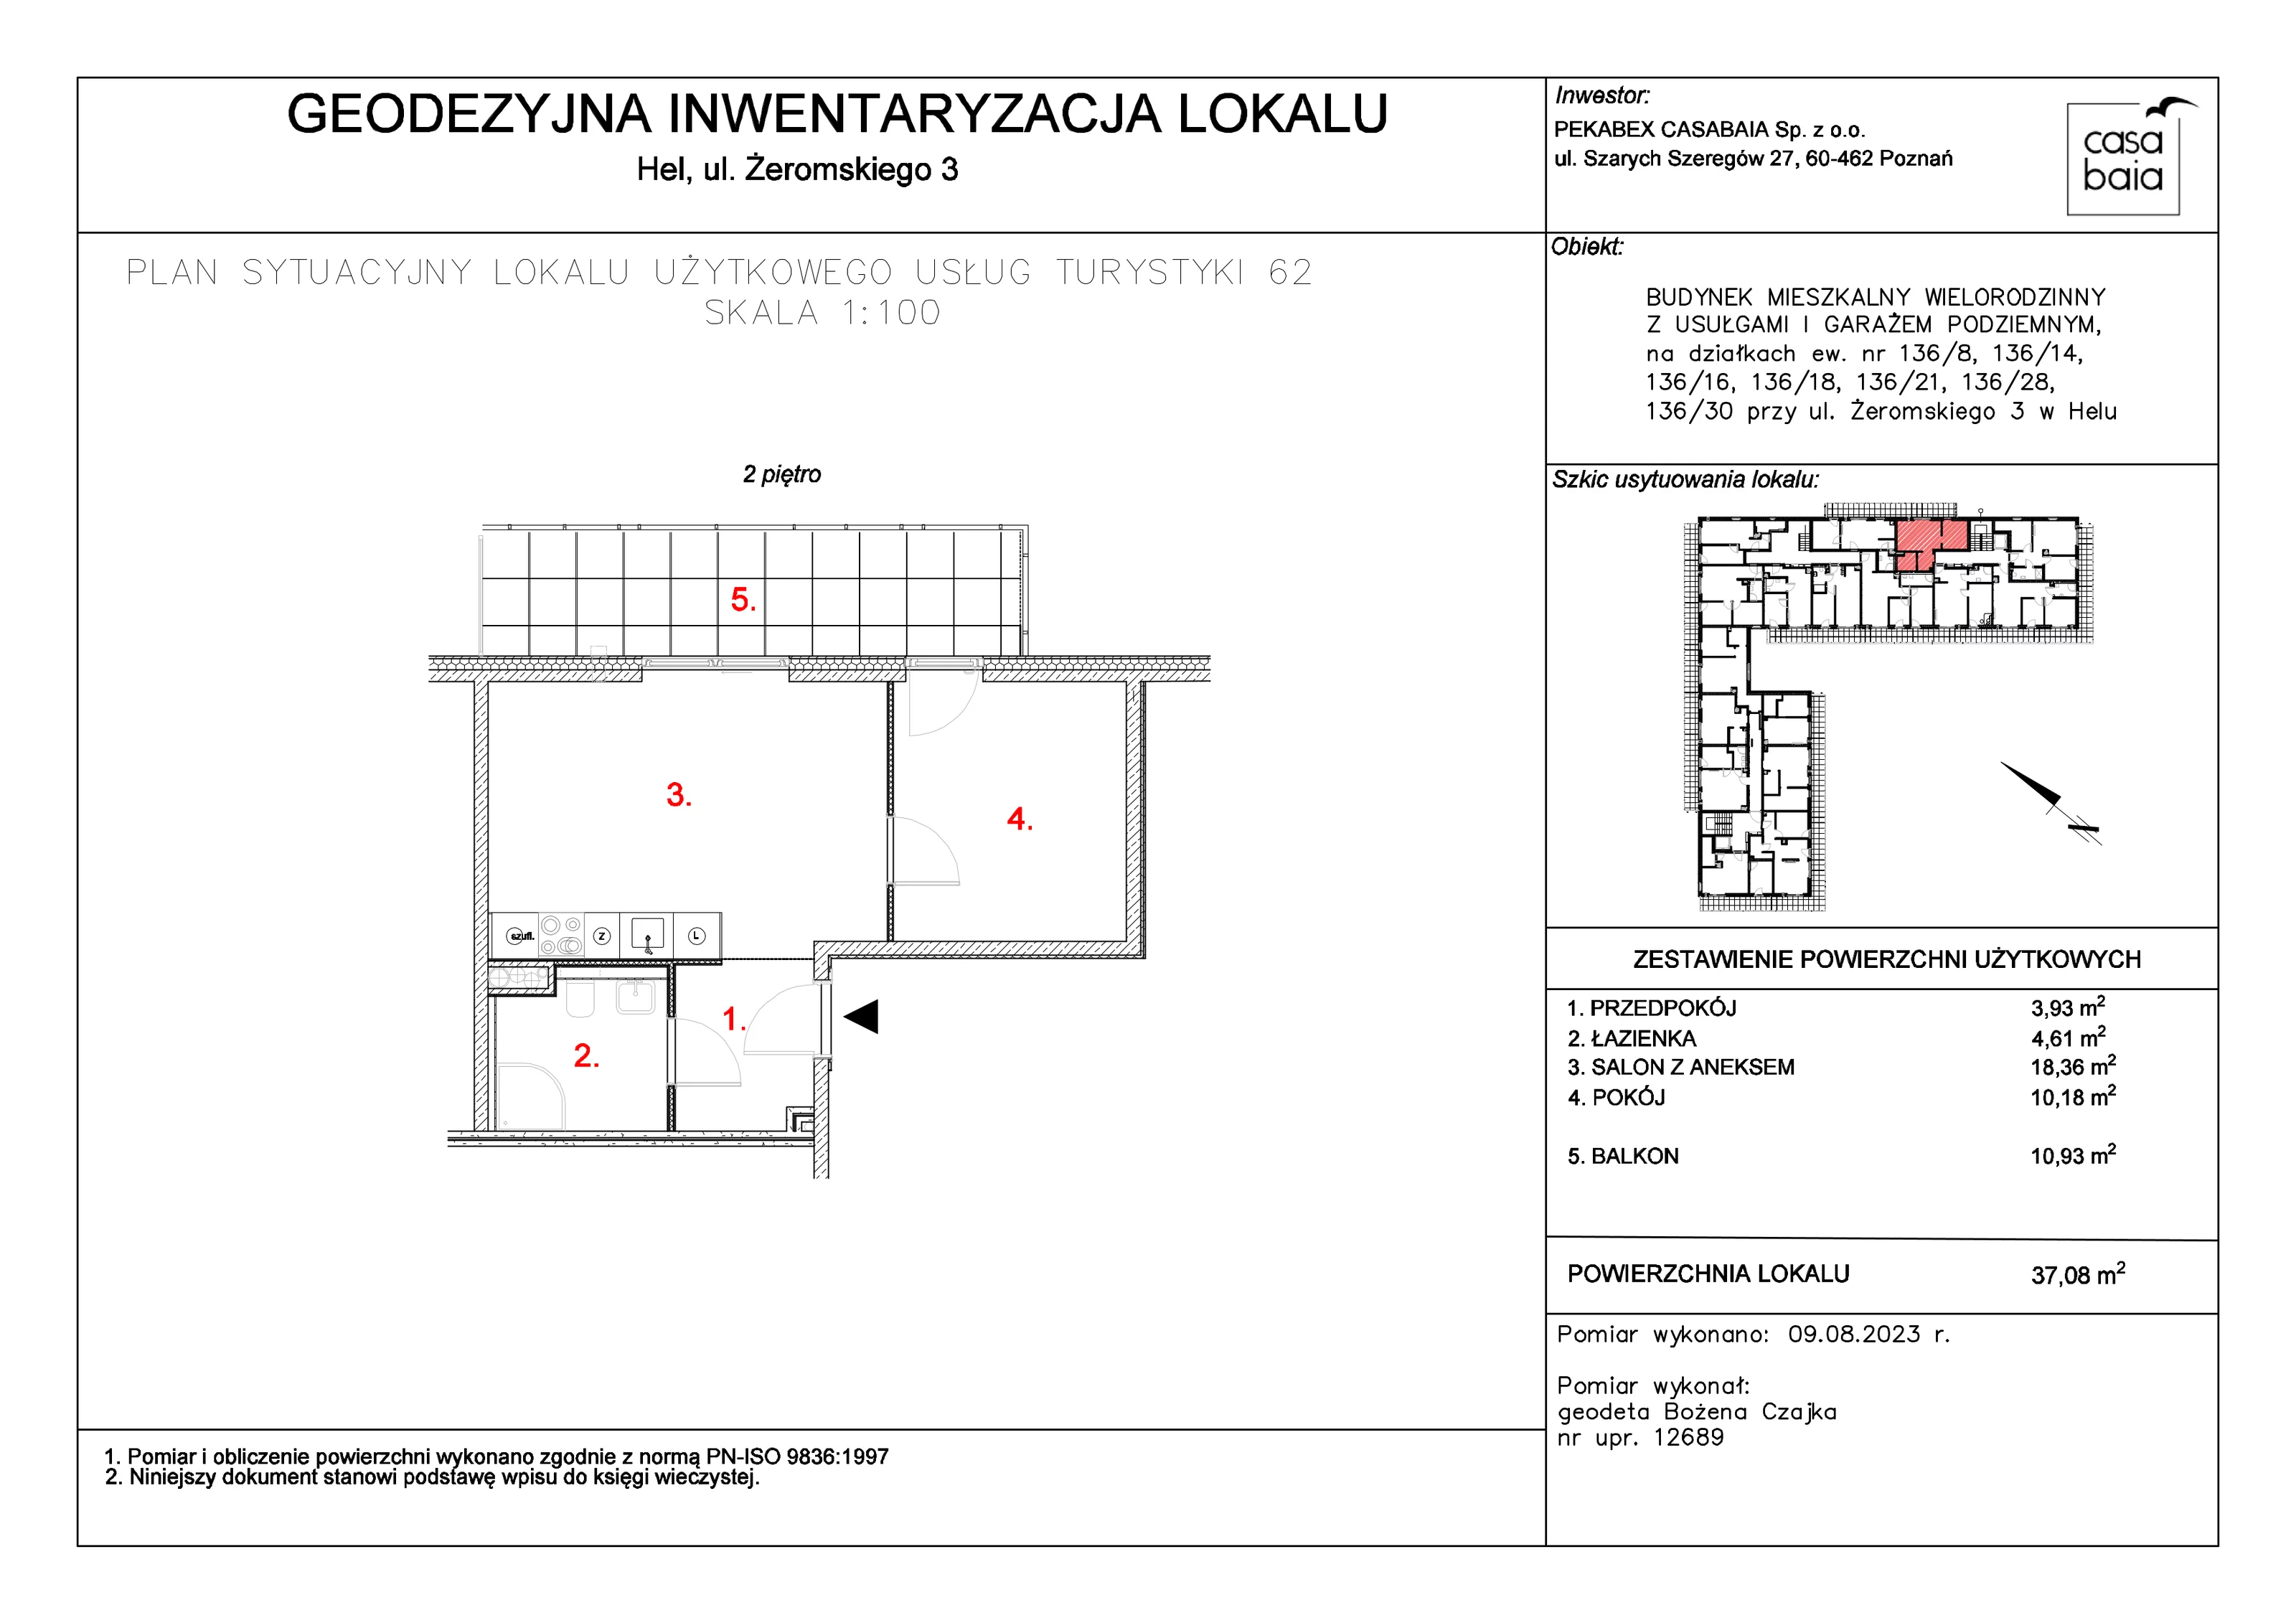 Mieszkanie 37,08 m², piętro 2, oferta nr D3, CASA BAIA, Hel, ul. Stefana Żeromskiego 3